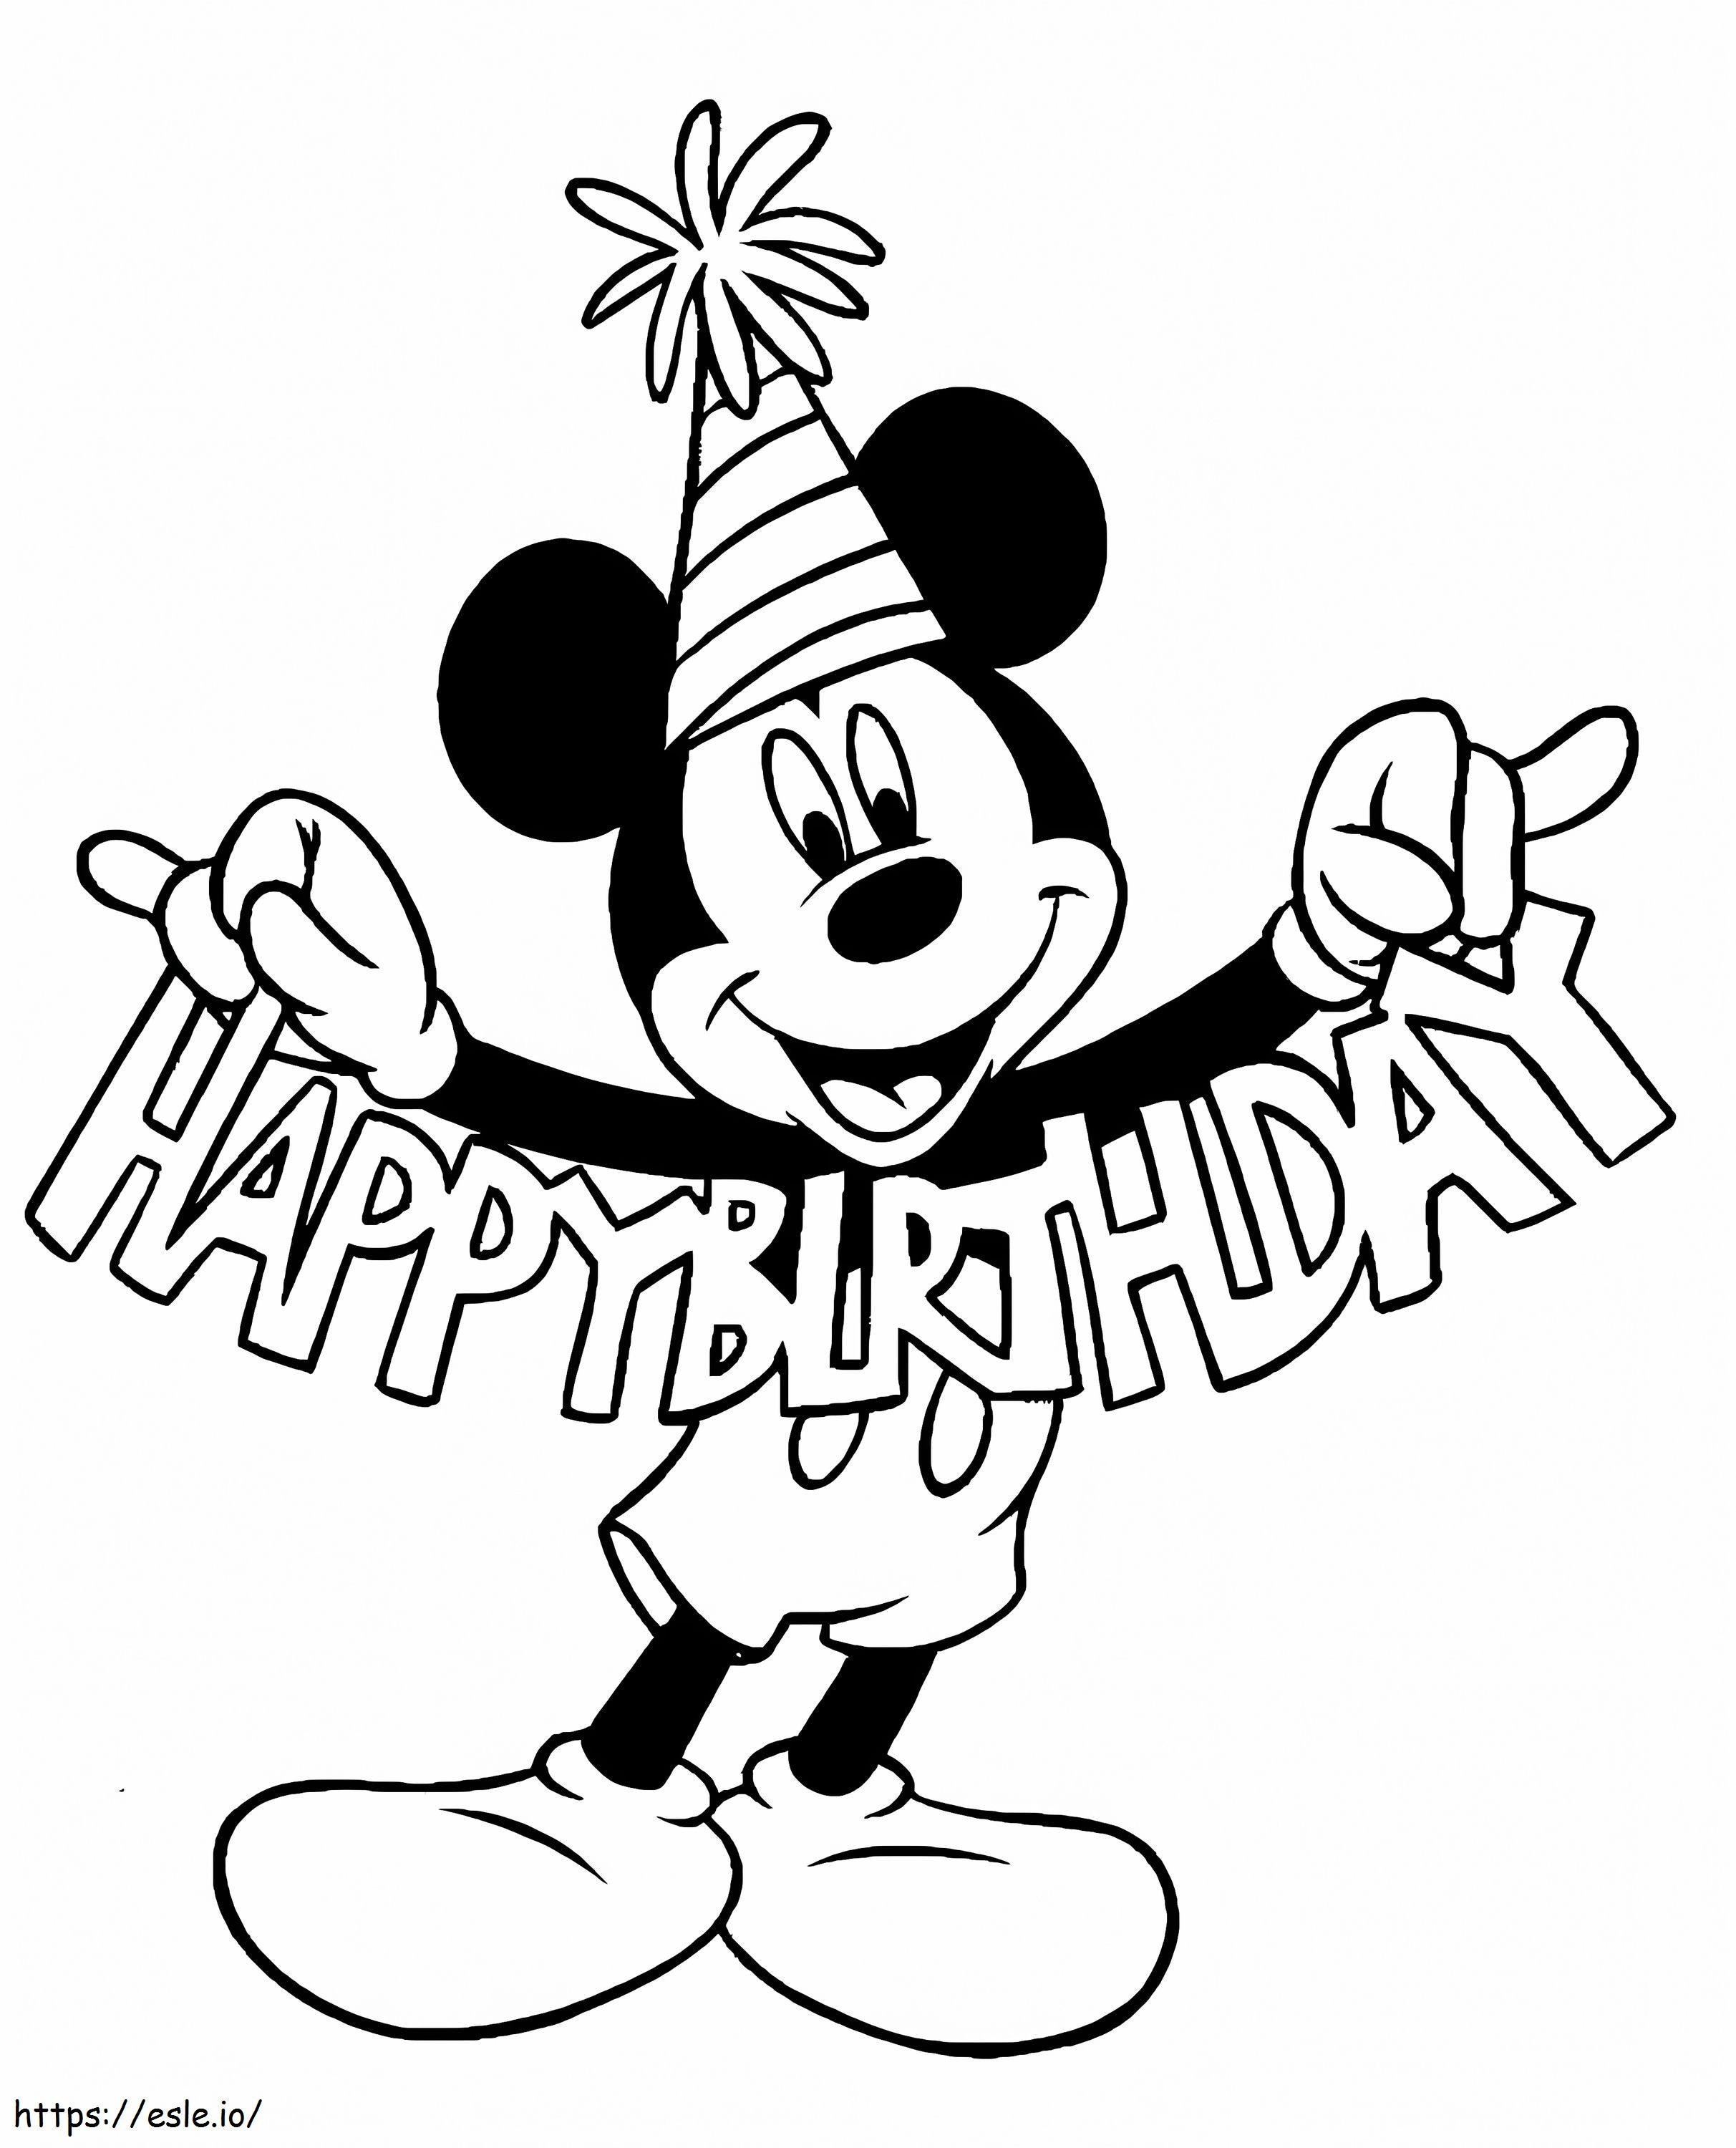 Alles Gute zum Geburtstag, Mickey ausmalbilder